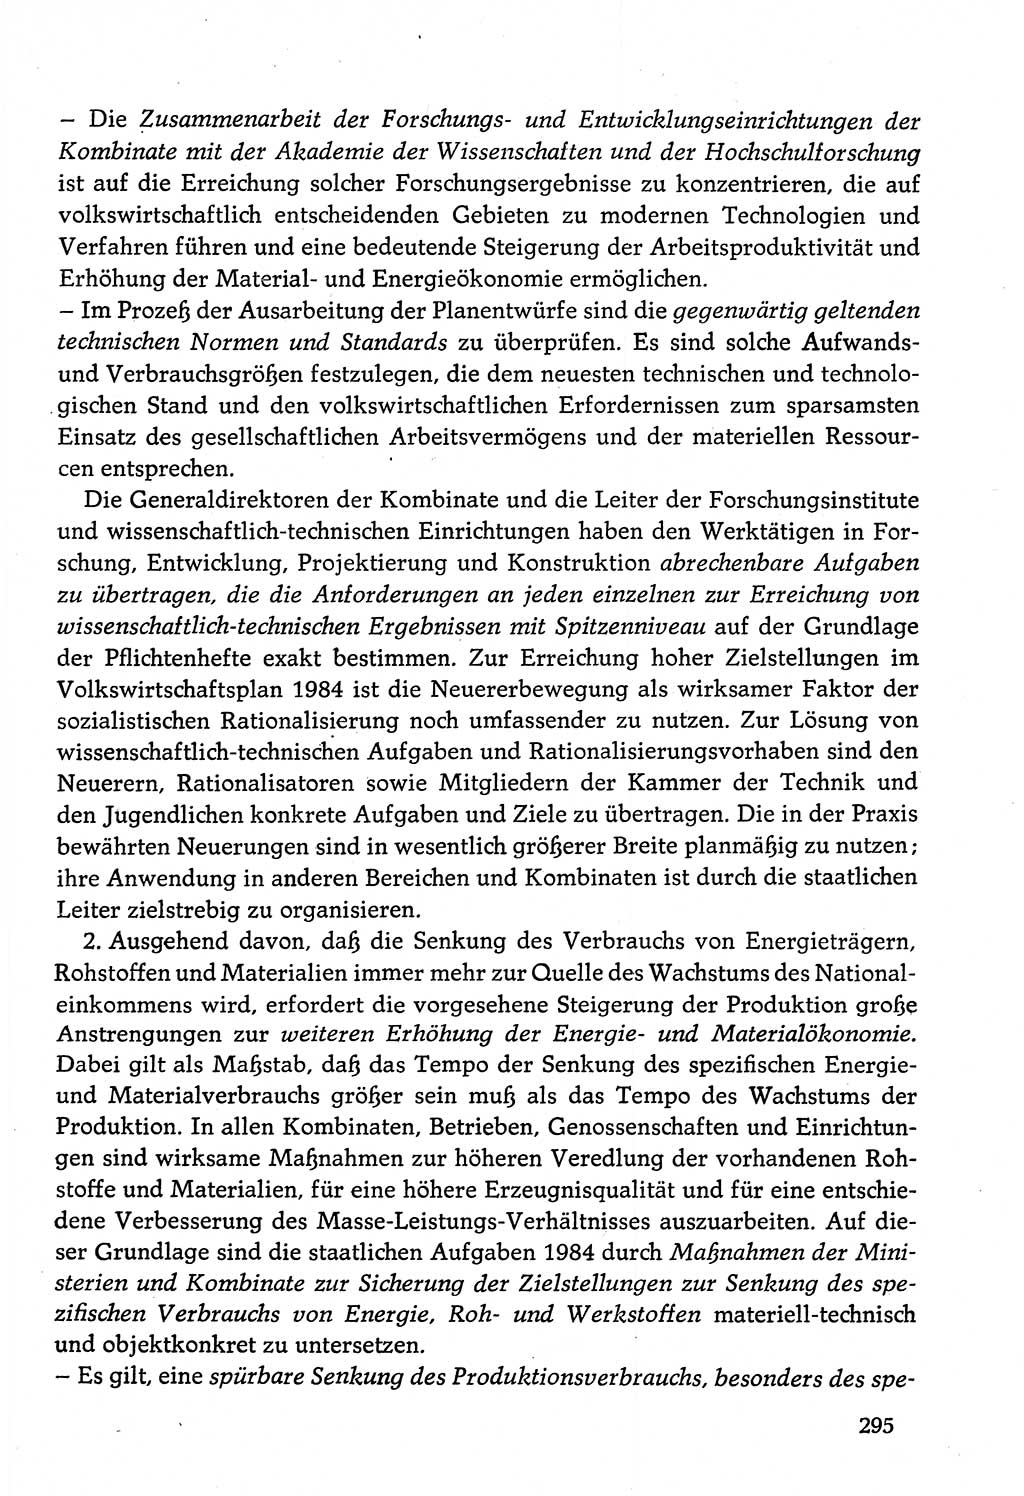 Dokumente der Sozialistischen Einheitspartei Deutschlands (SED) [Deutsche Demokratische Republik (DDR)] 1982-1983, Seite 295 (Dok. SED DDR 1982-1983, S. 295)